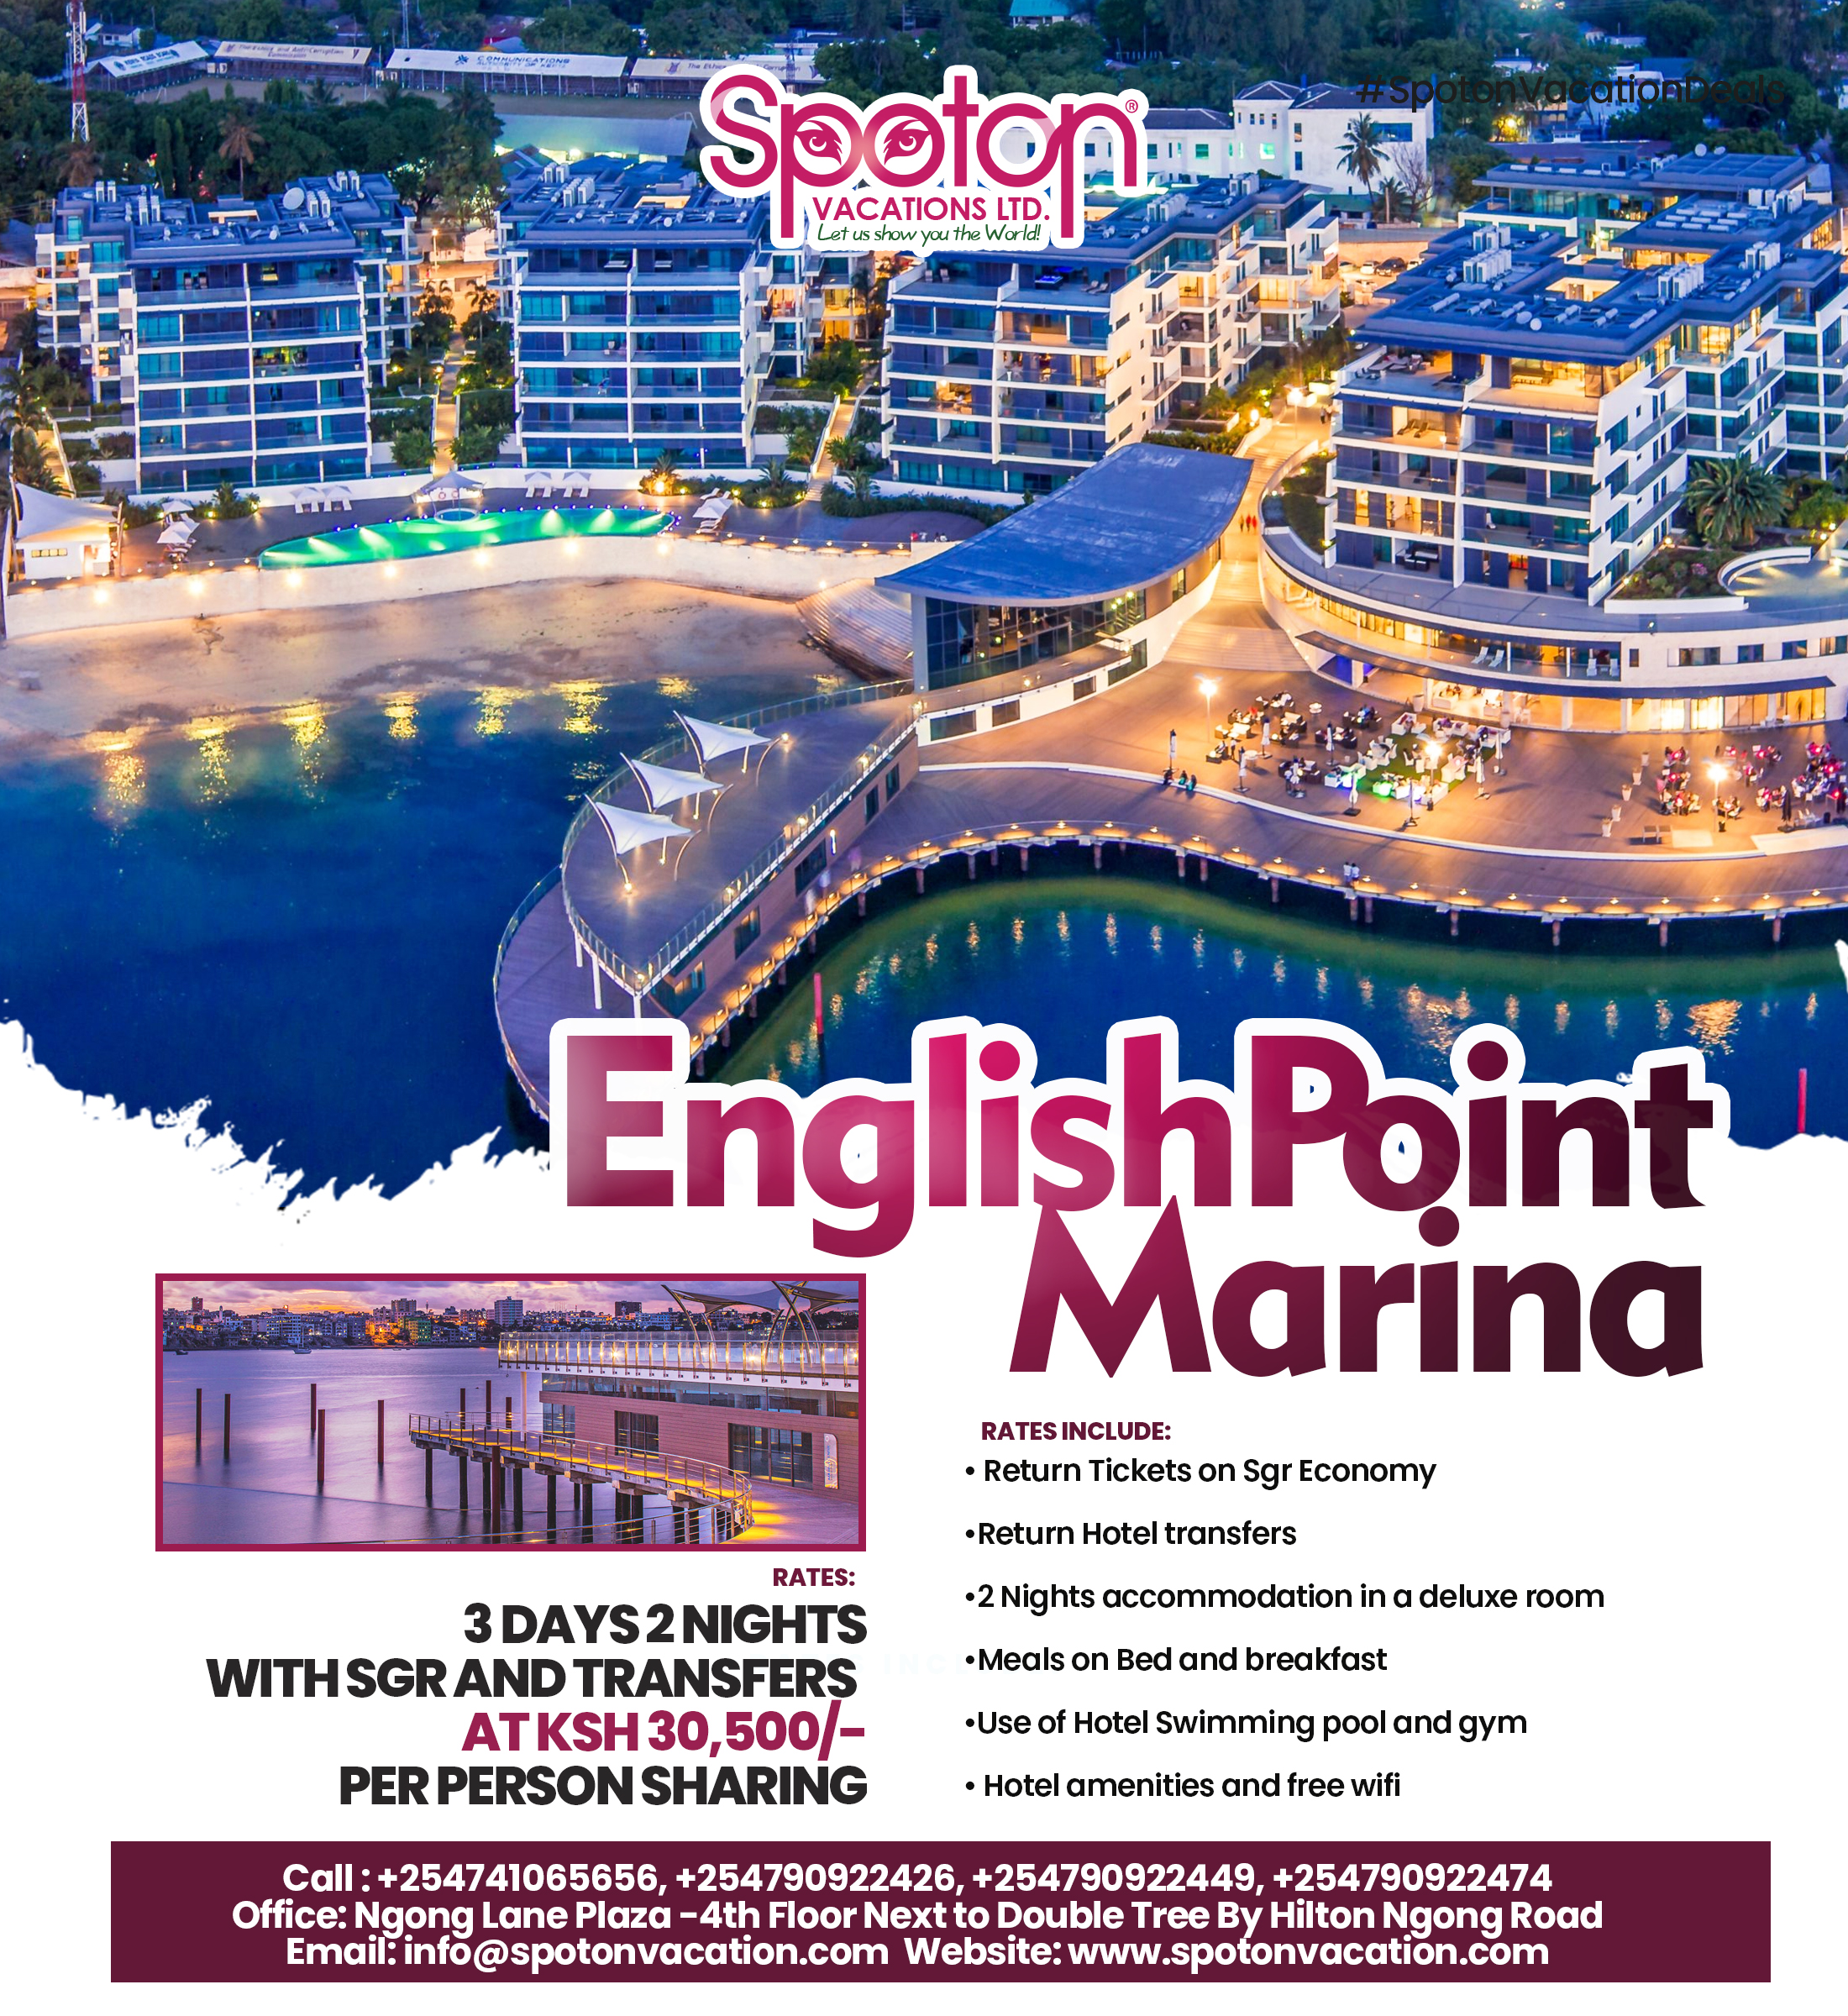 EnglishPoint Marina